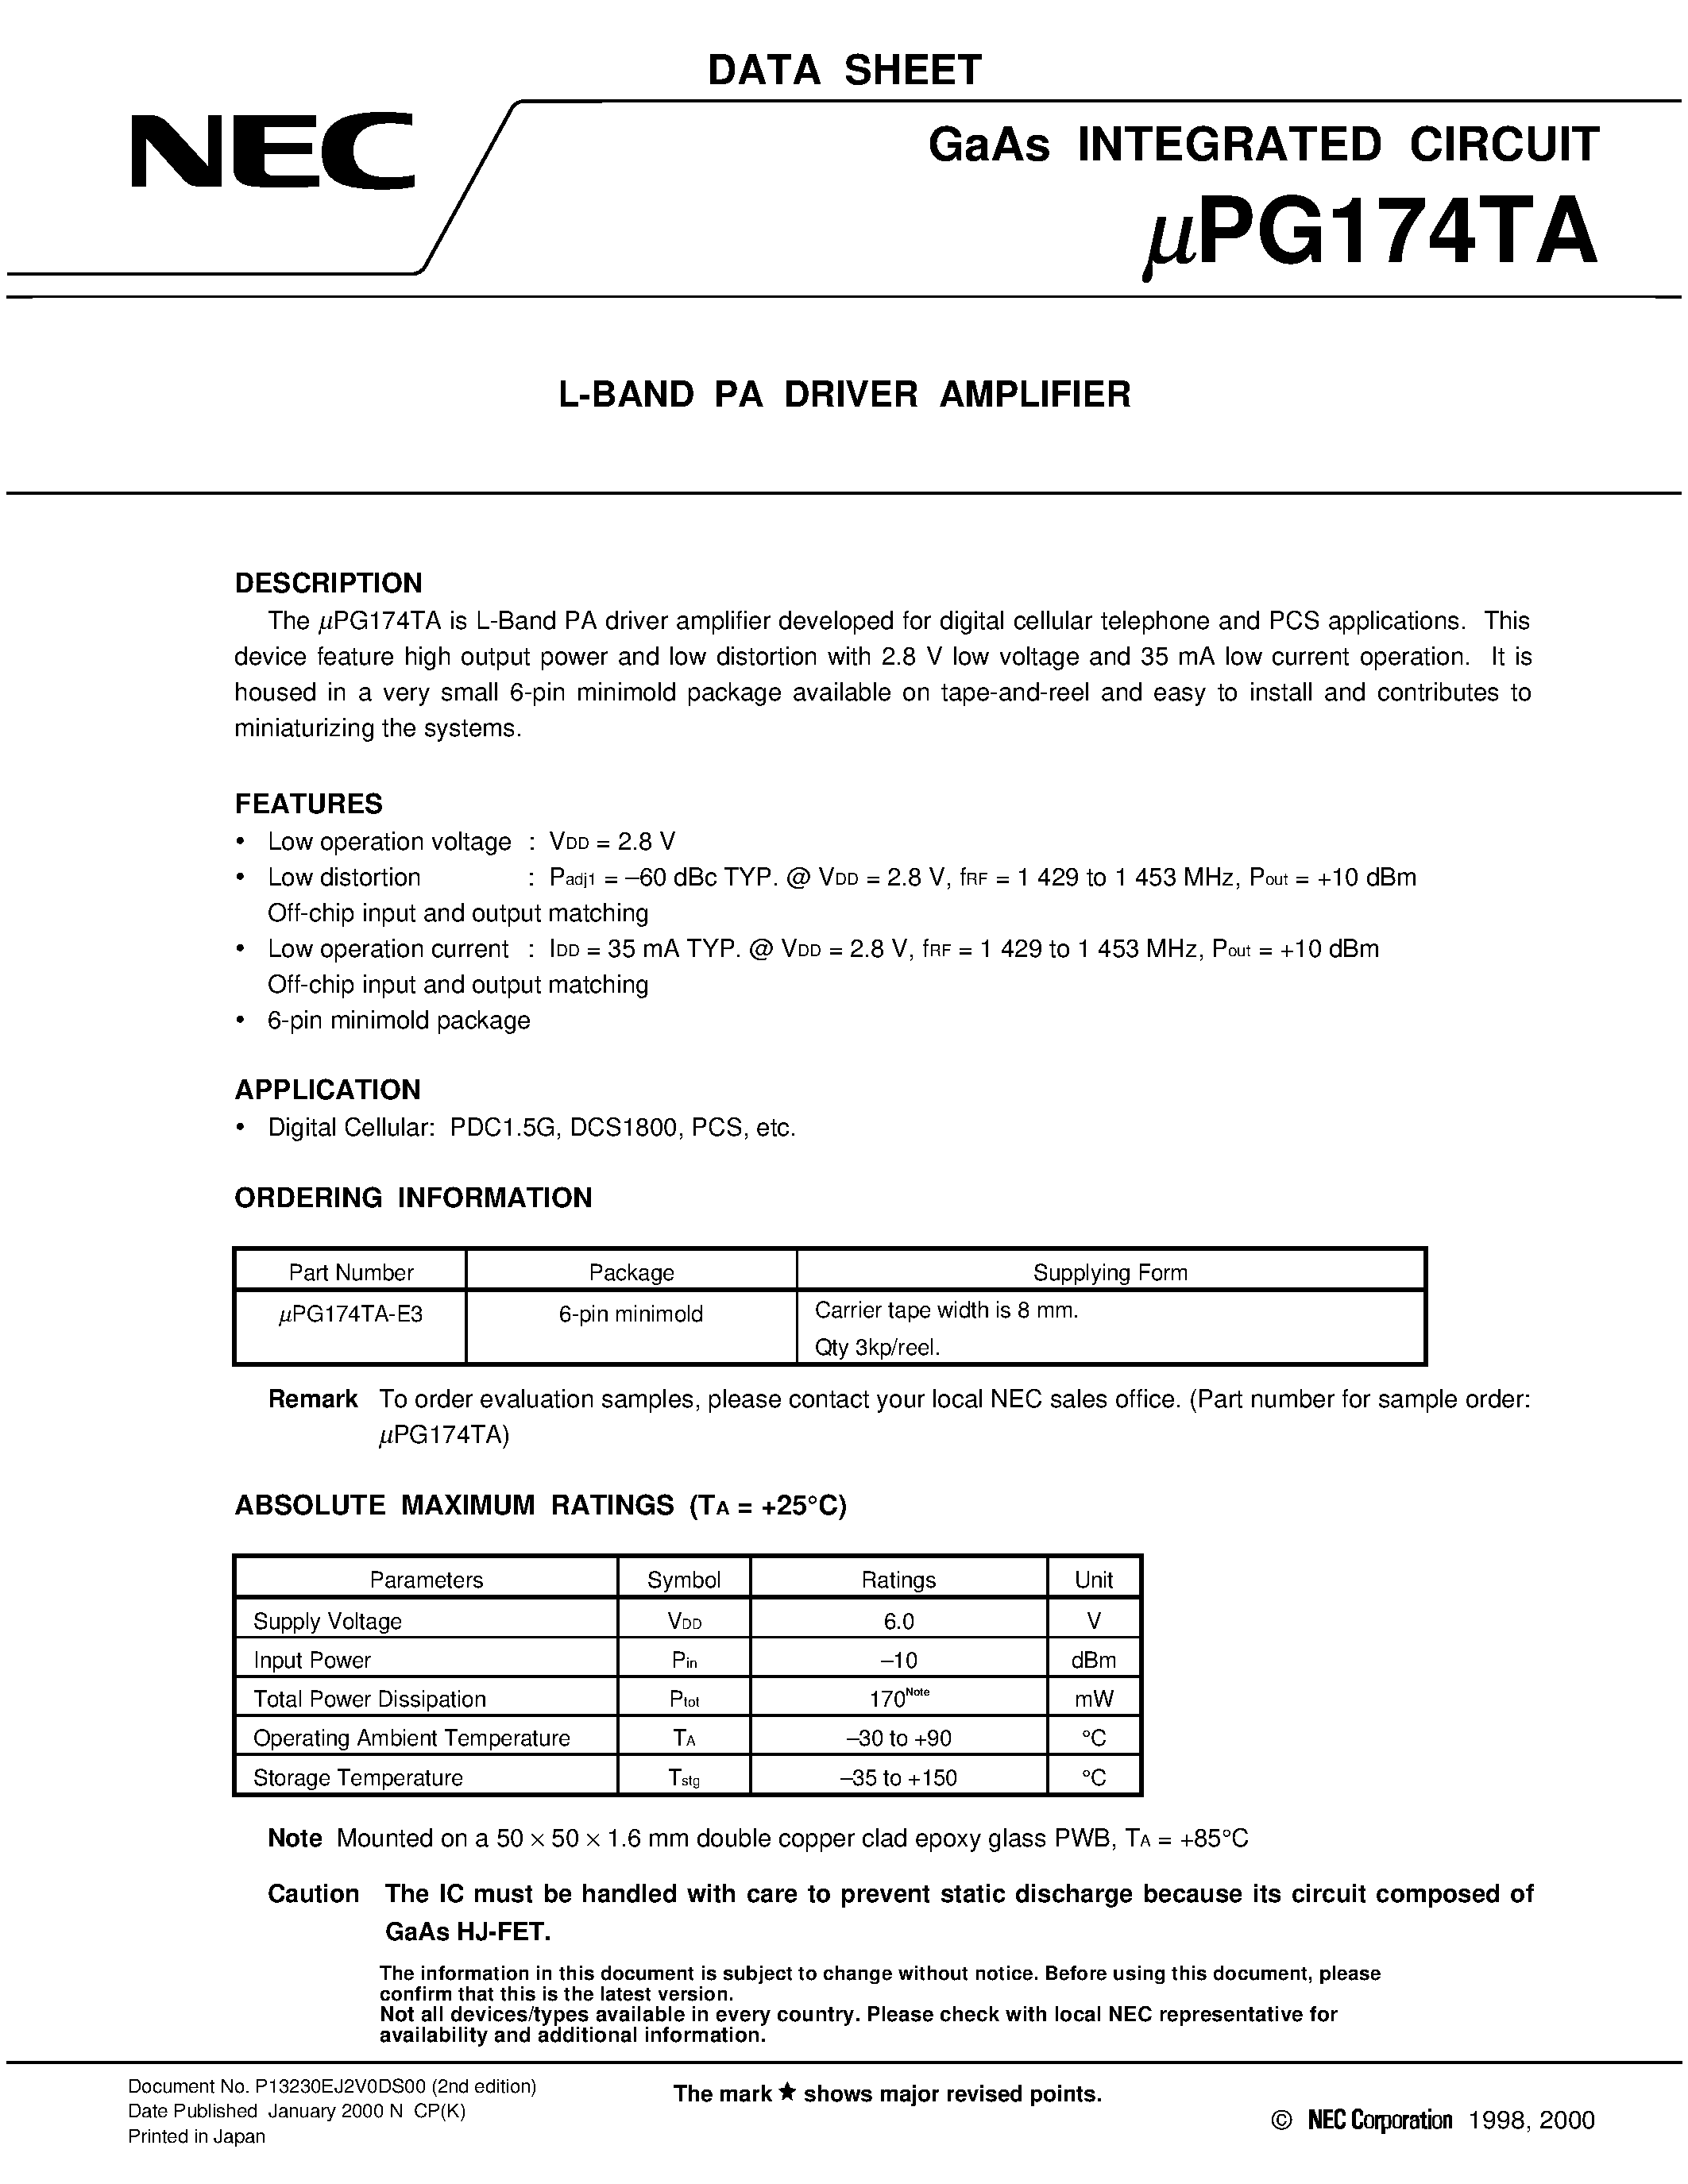 Даташит UPG174TA-E3 - L-BAND PA DRIVER AMPLIFIER страница 1